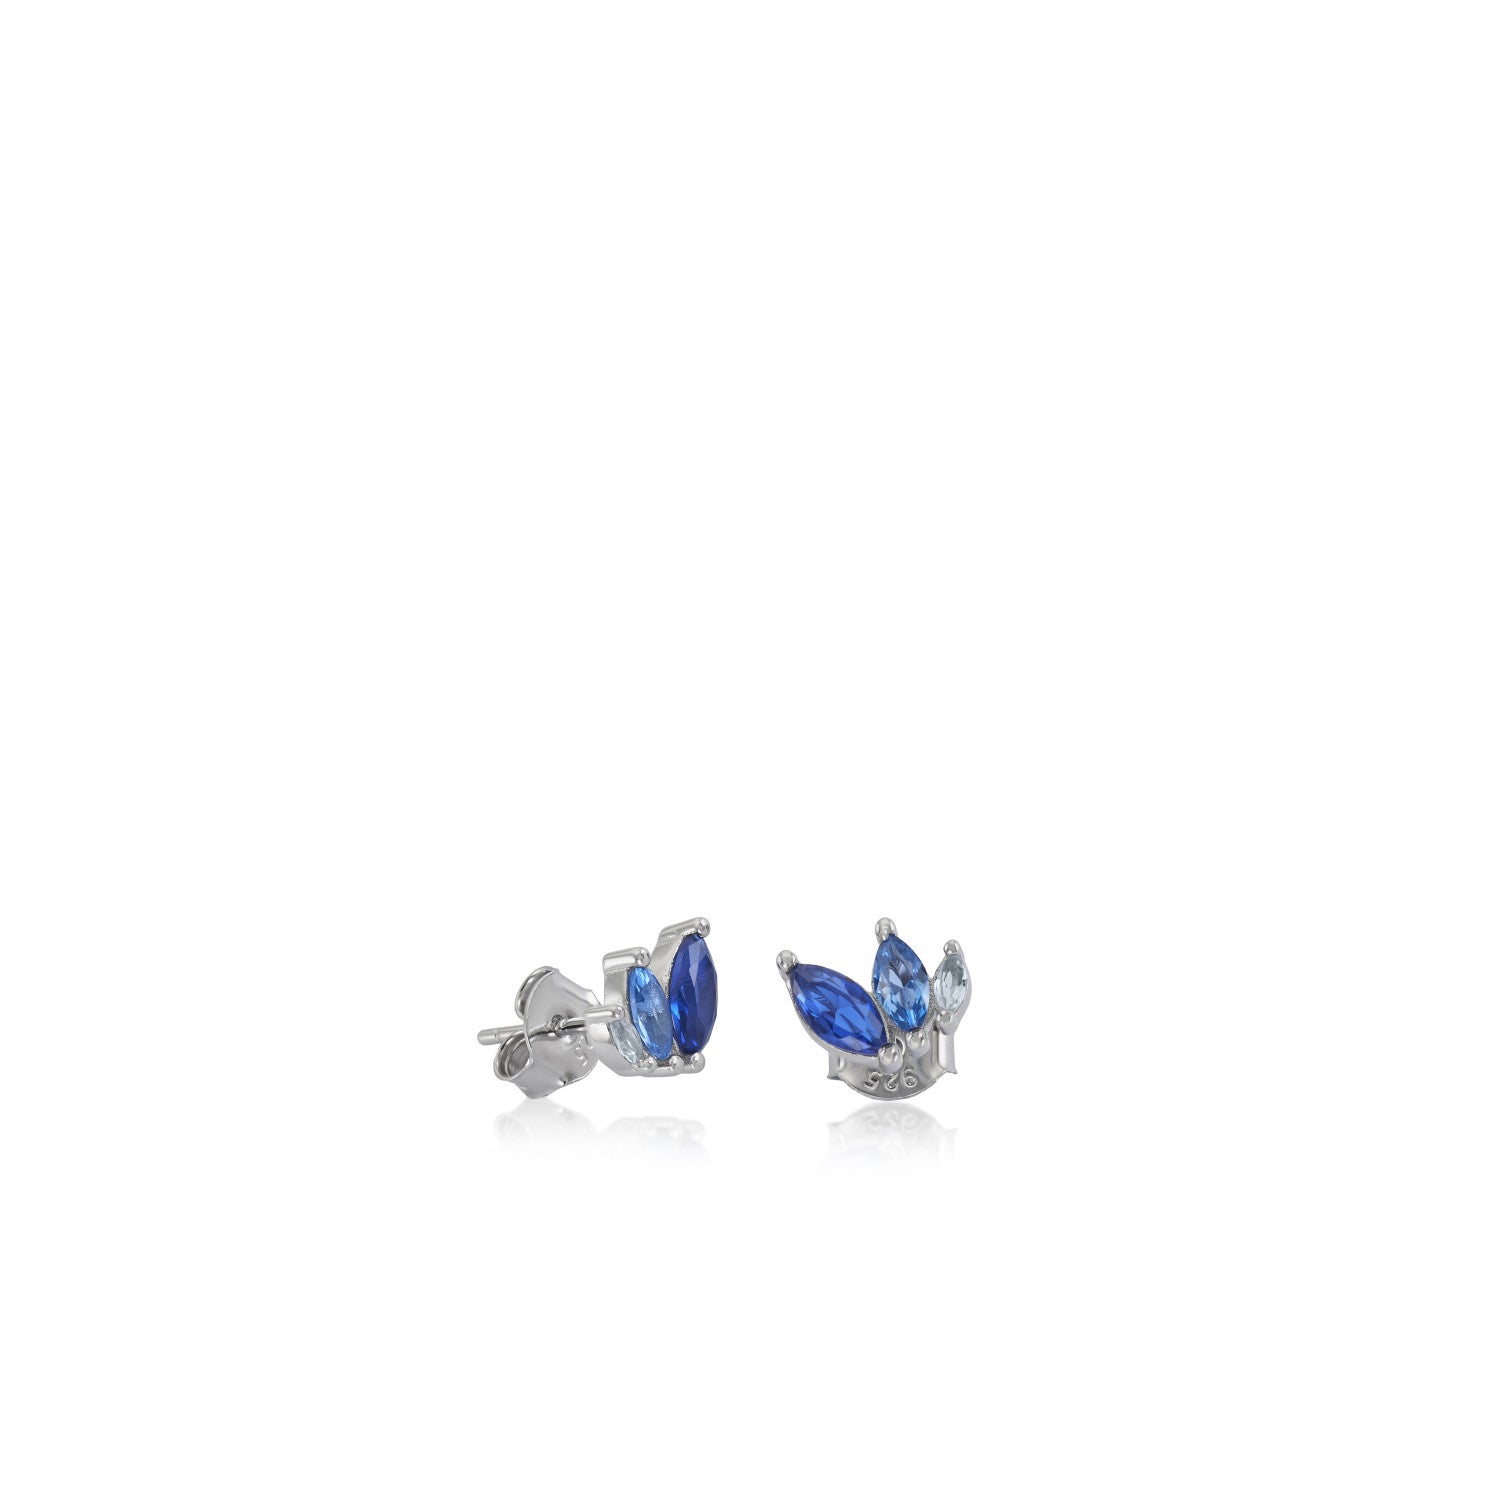 Pendientes pequeños de plata con gemas en tonos azul